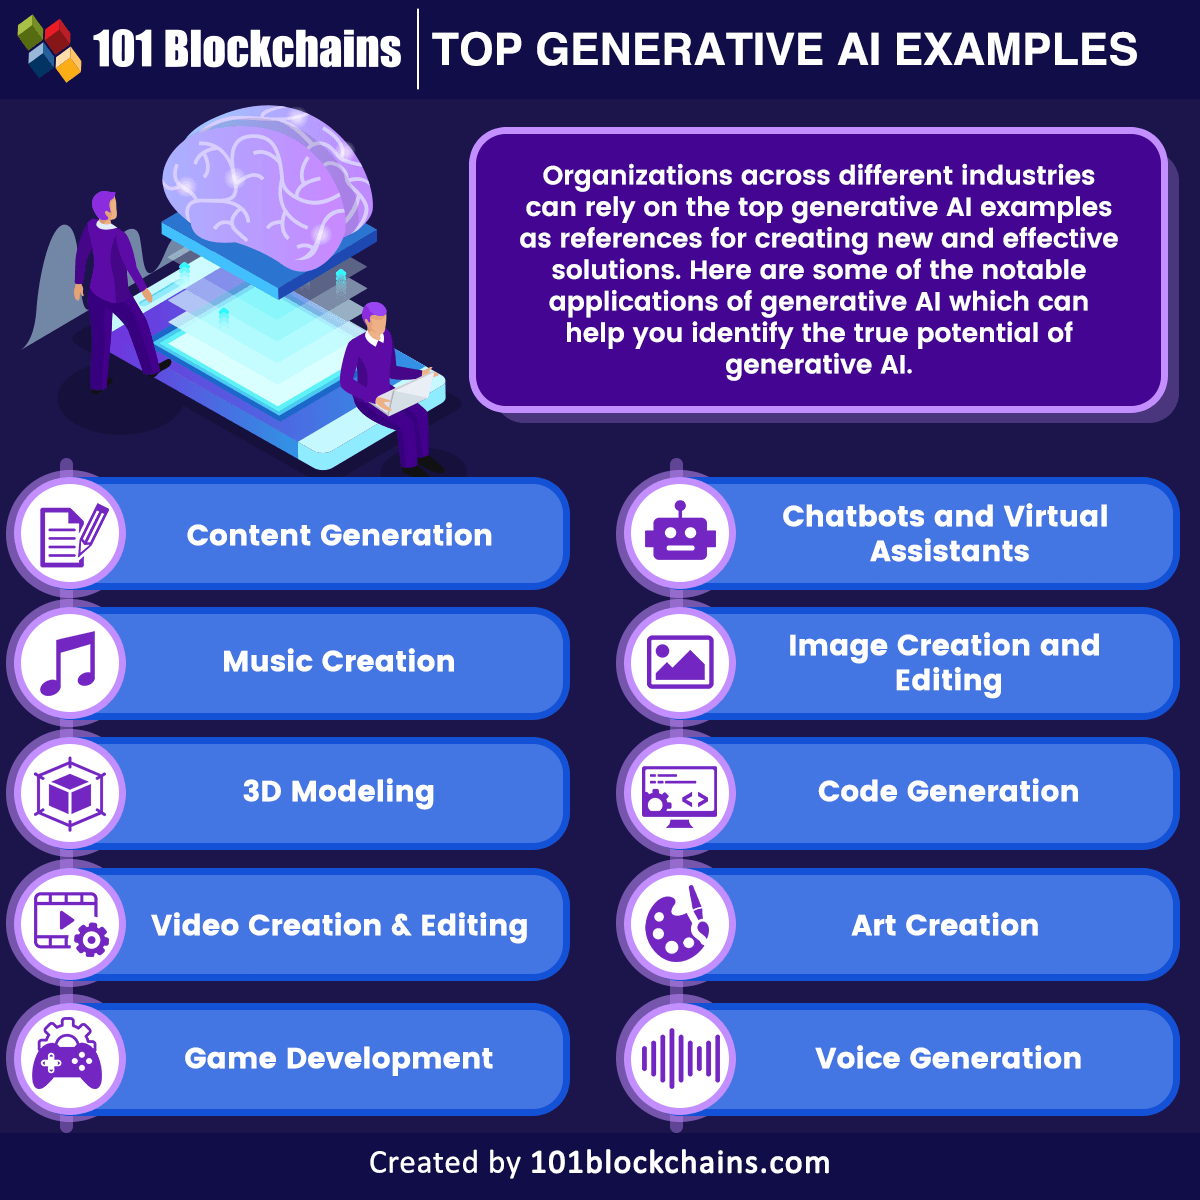 Top Generative AI Examples